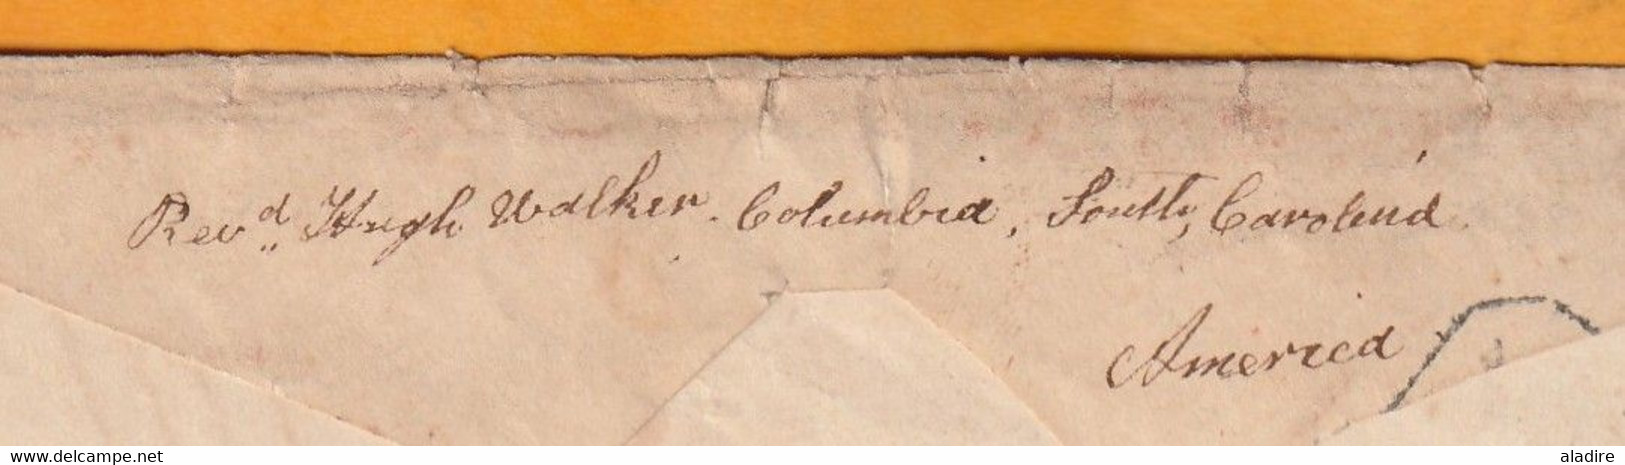 1848 - QV - reine Victoria - devant et verso partiels d'enveloppe  de BALLYMAHON, Irlande vers COLUMBIA, USA